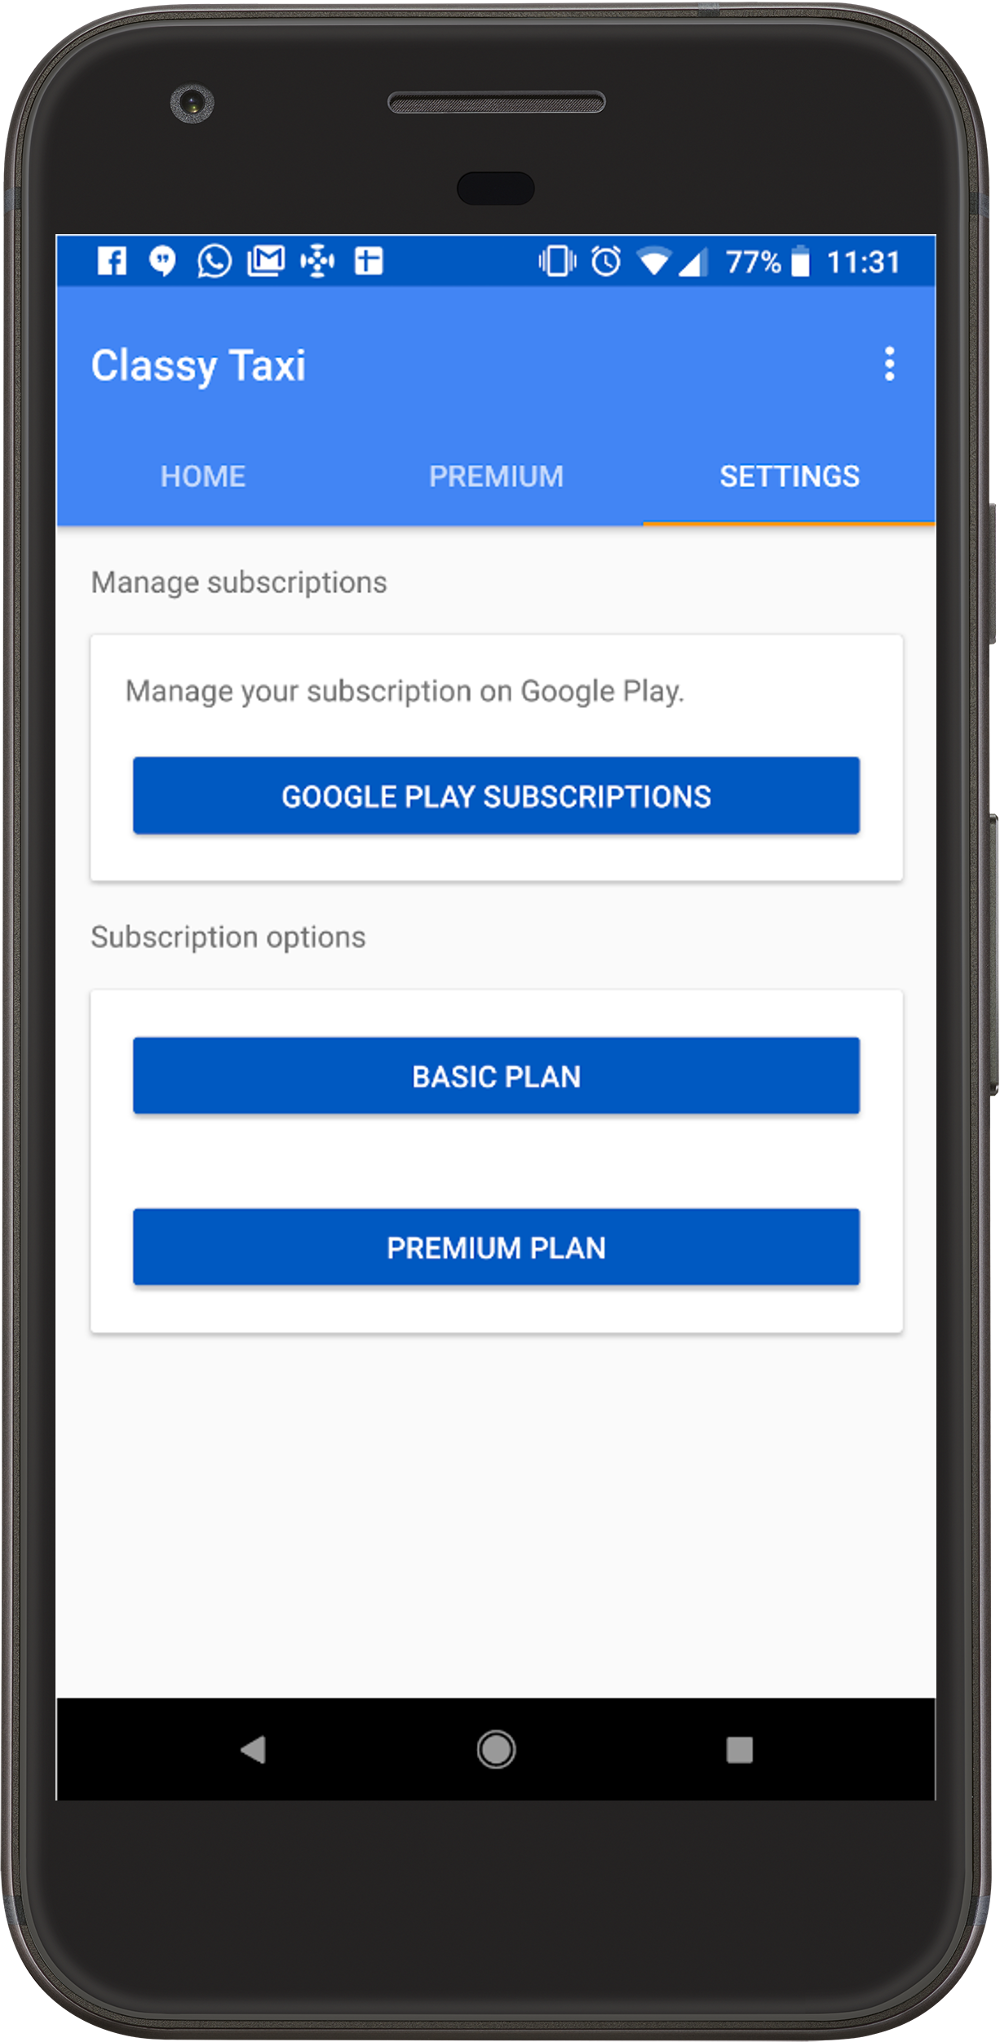 本圖中的「Google Play 訂閱服務」按鈕為「管理訂閱項目」連結的範例。